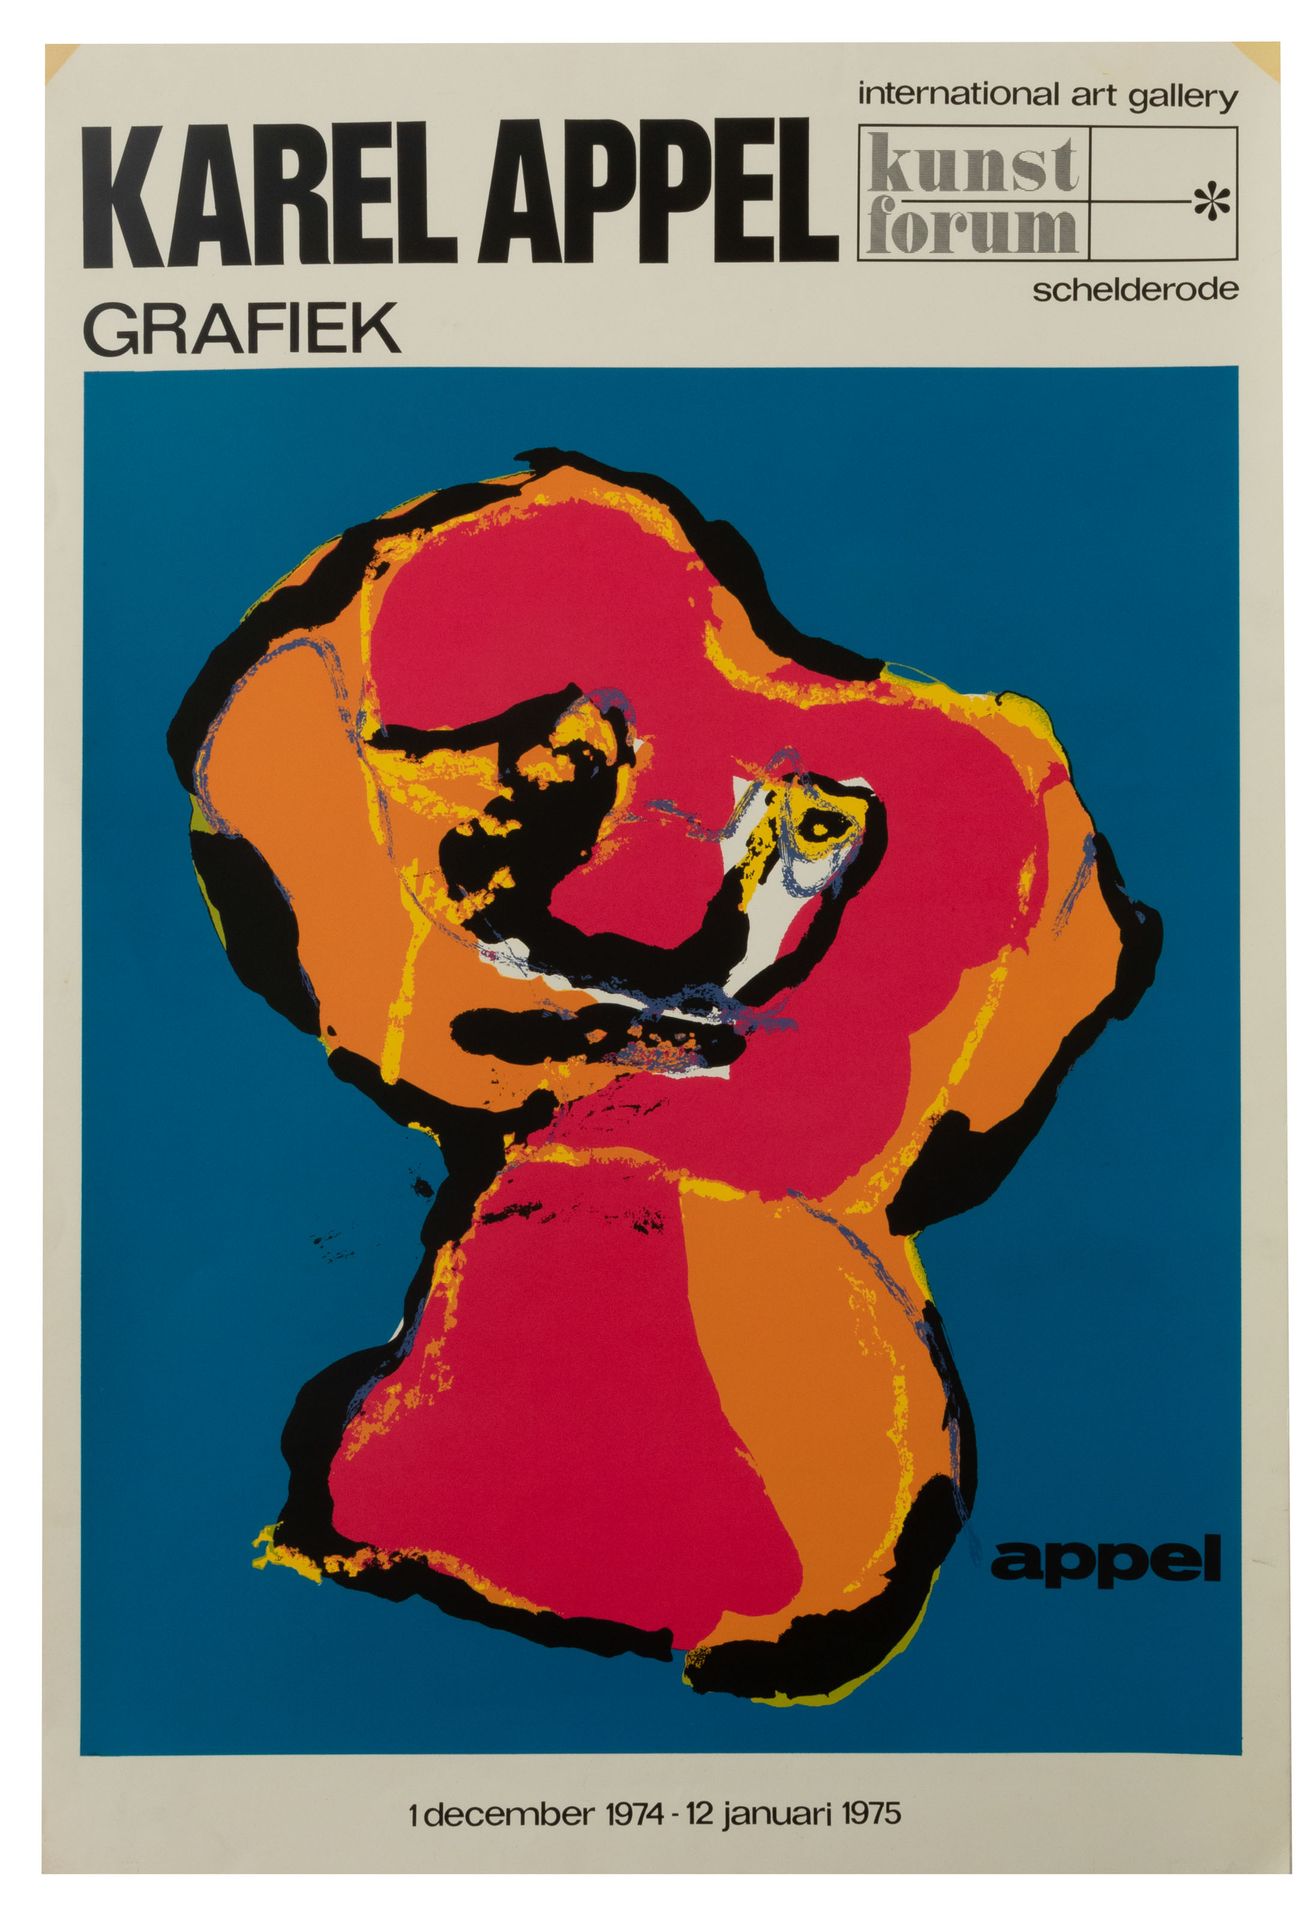 KAREL APPEL (1921-2006) Karel Appel Grafiek'.展览海报，Schelderode，"国际艺术画廊Kunstforum"&hellip;